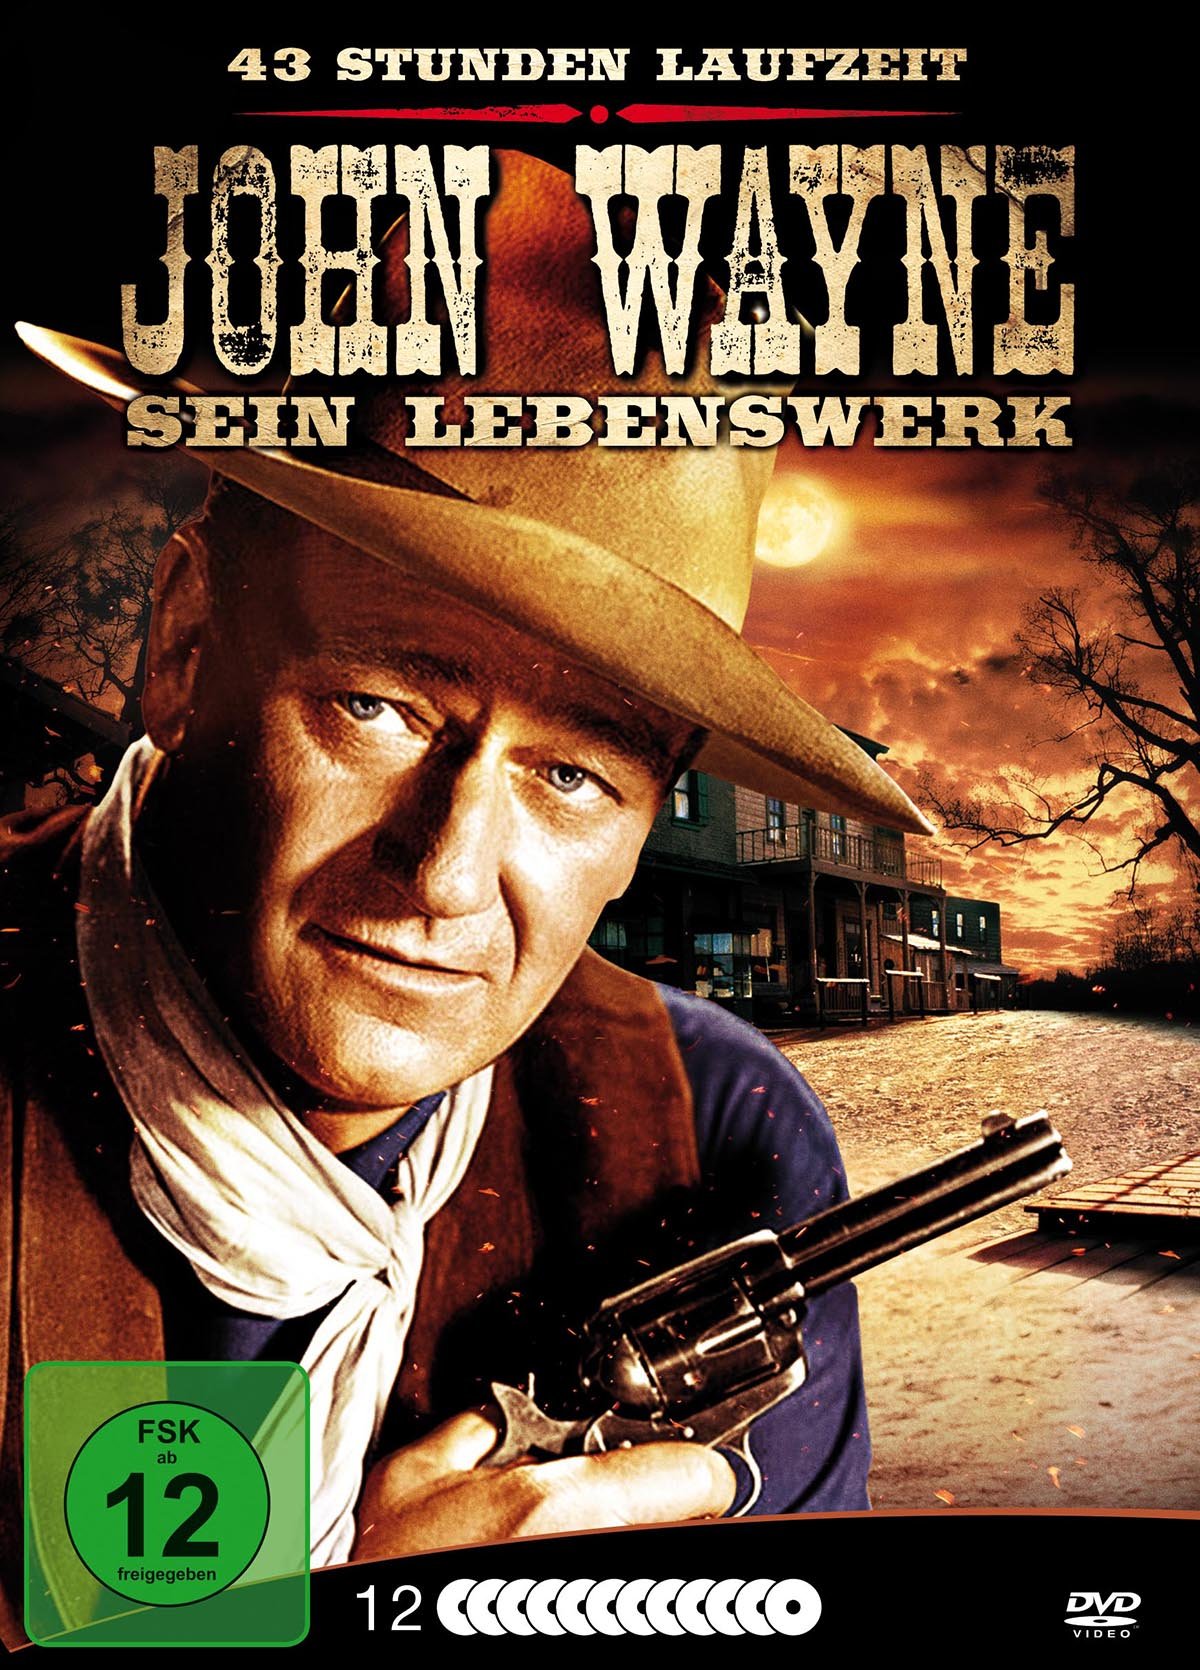 John Wayne - Sein Lebenswerk [Metallbox mit 12 DVDs]